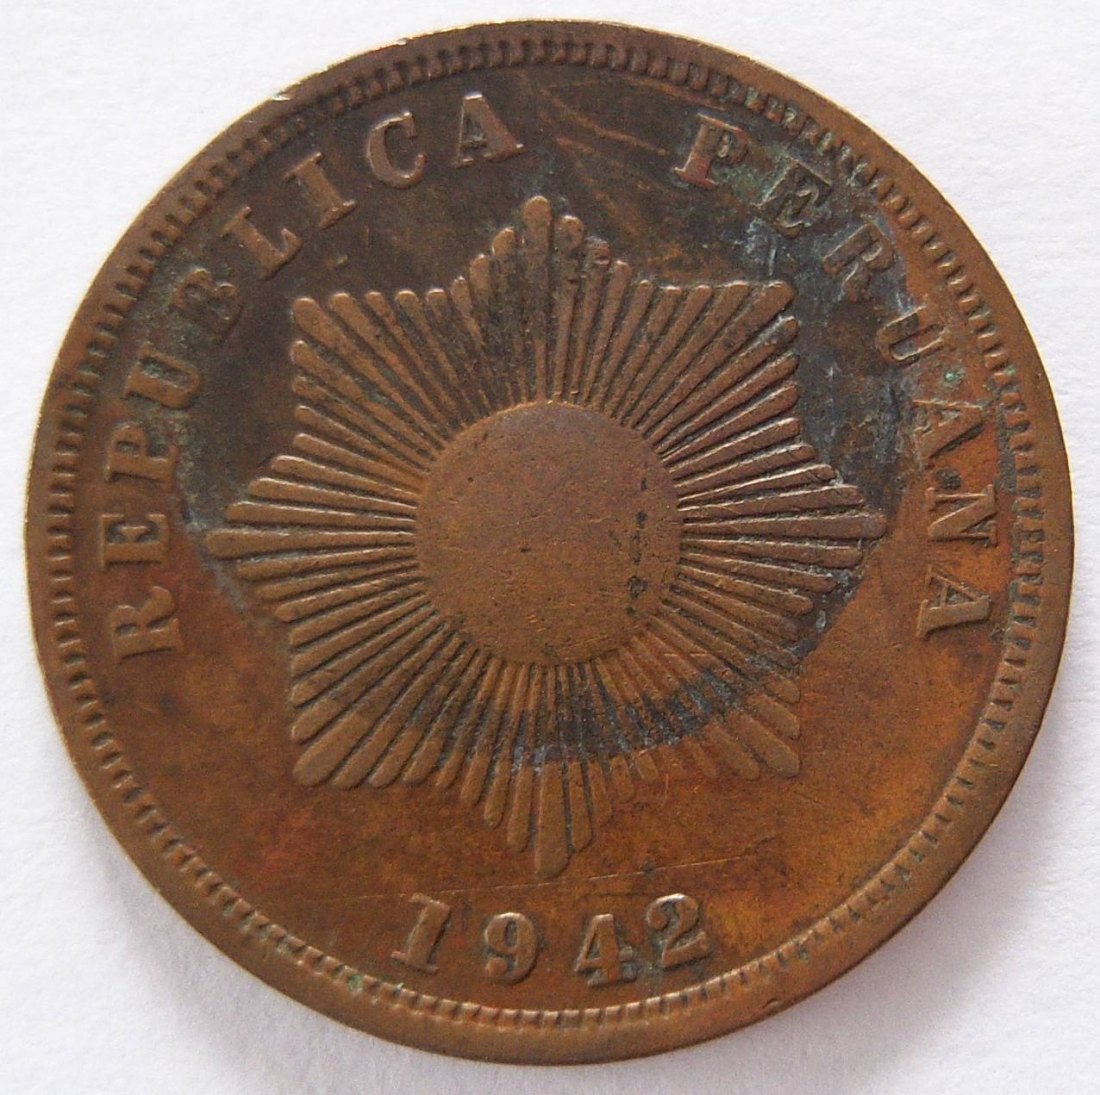  Peru Dos 2 Centavos 1942   